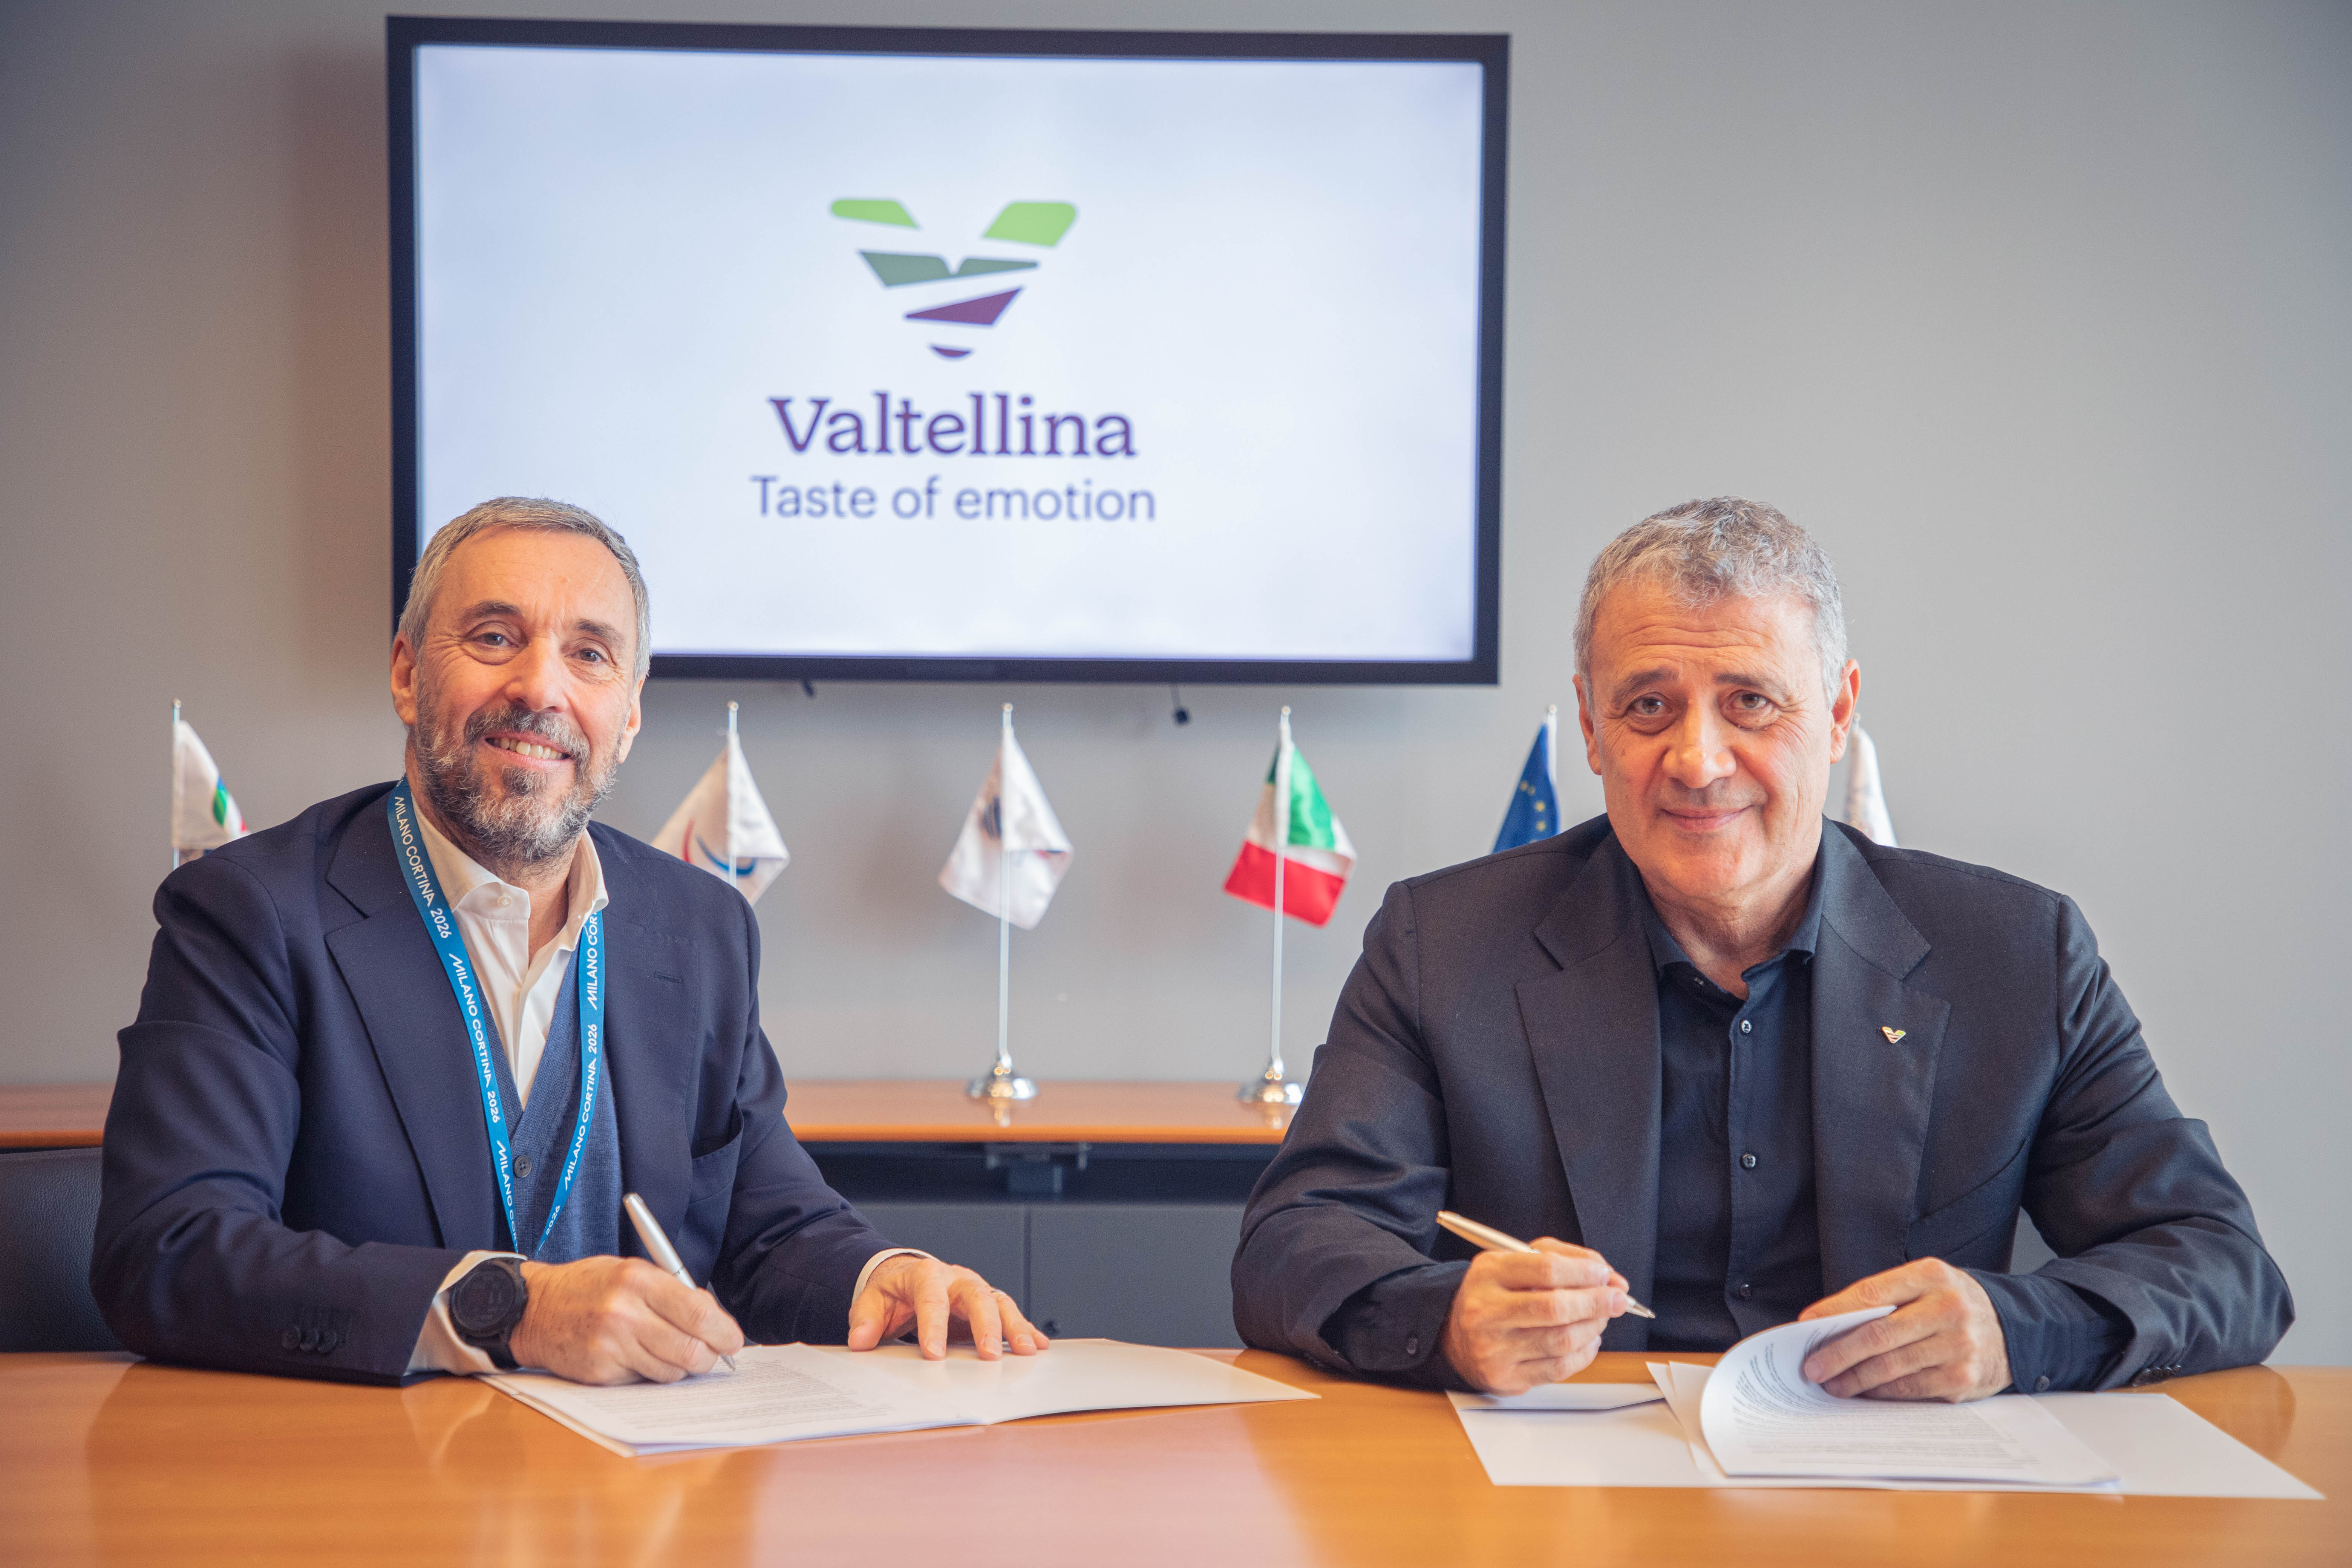 Photo by Andrea Varnier , managing director of Milano Cortina 2026, and Claudio Palladi, president of the Distretto Agroalimentare di Qualità della Valtellina